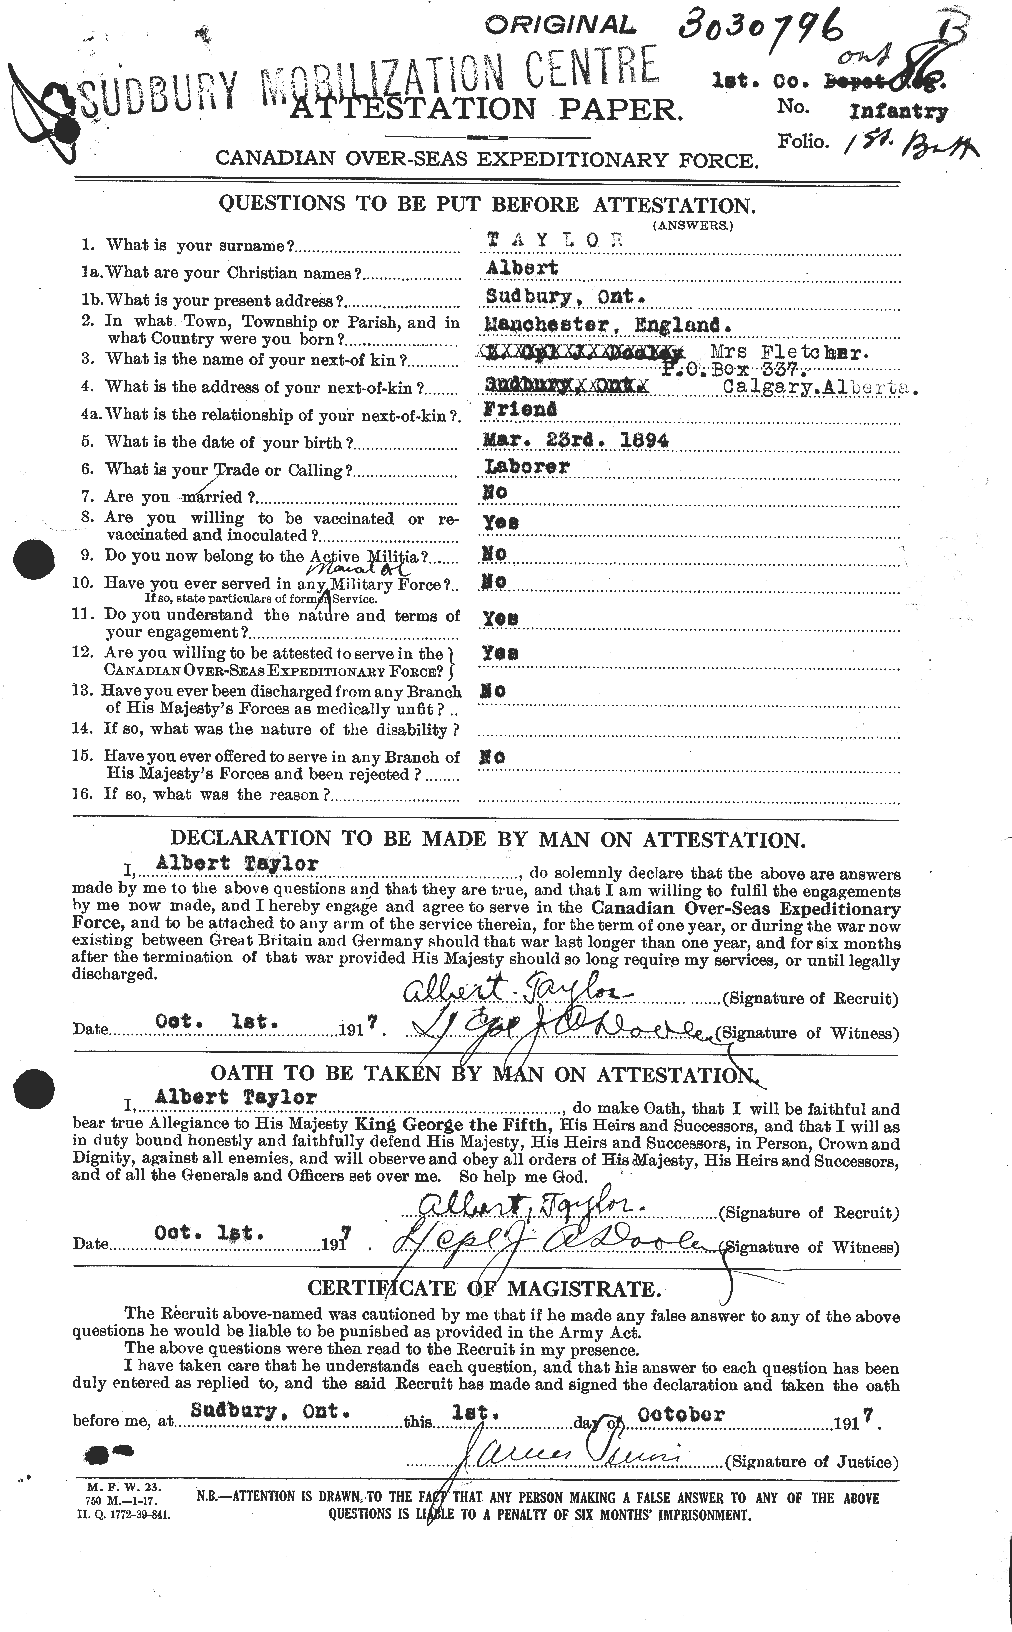 Dossiers du Personnel de la Première Guerre mondiale - CEC 626086a